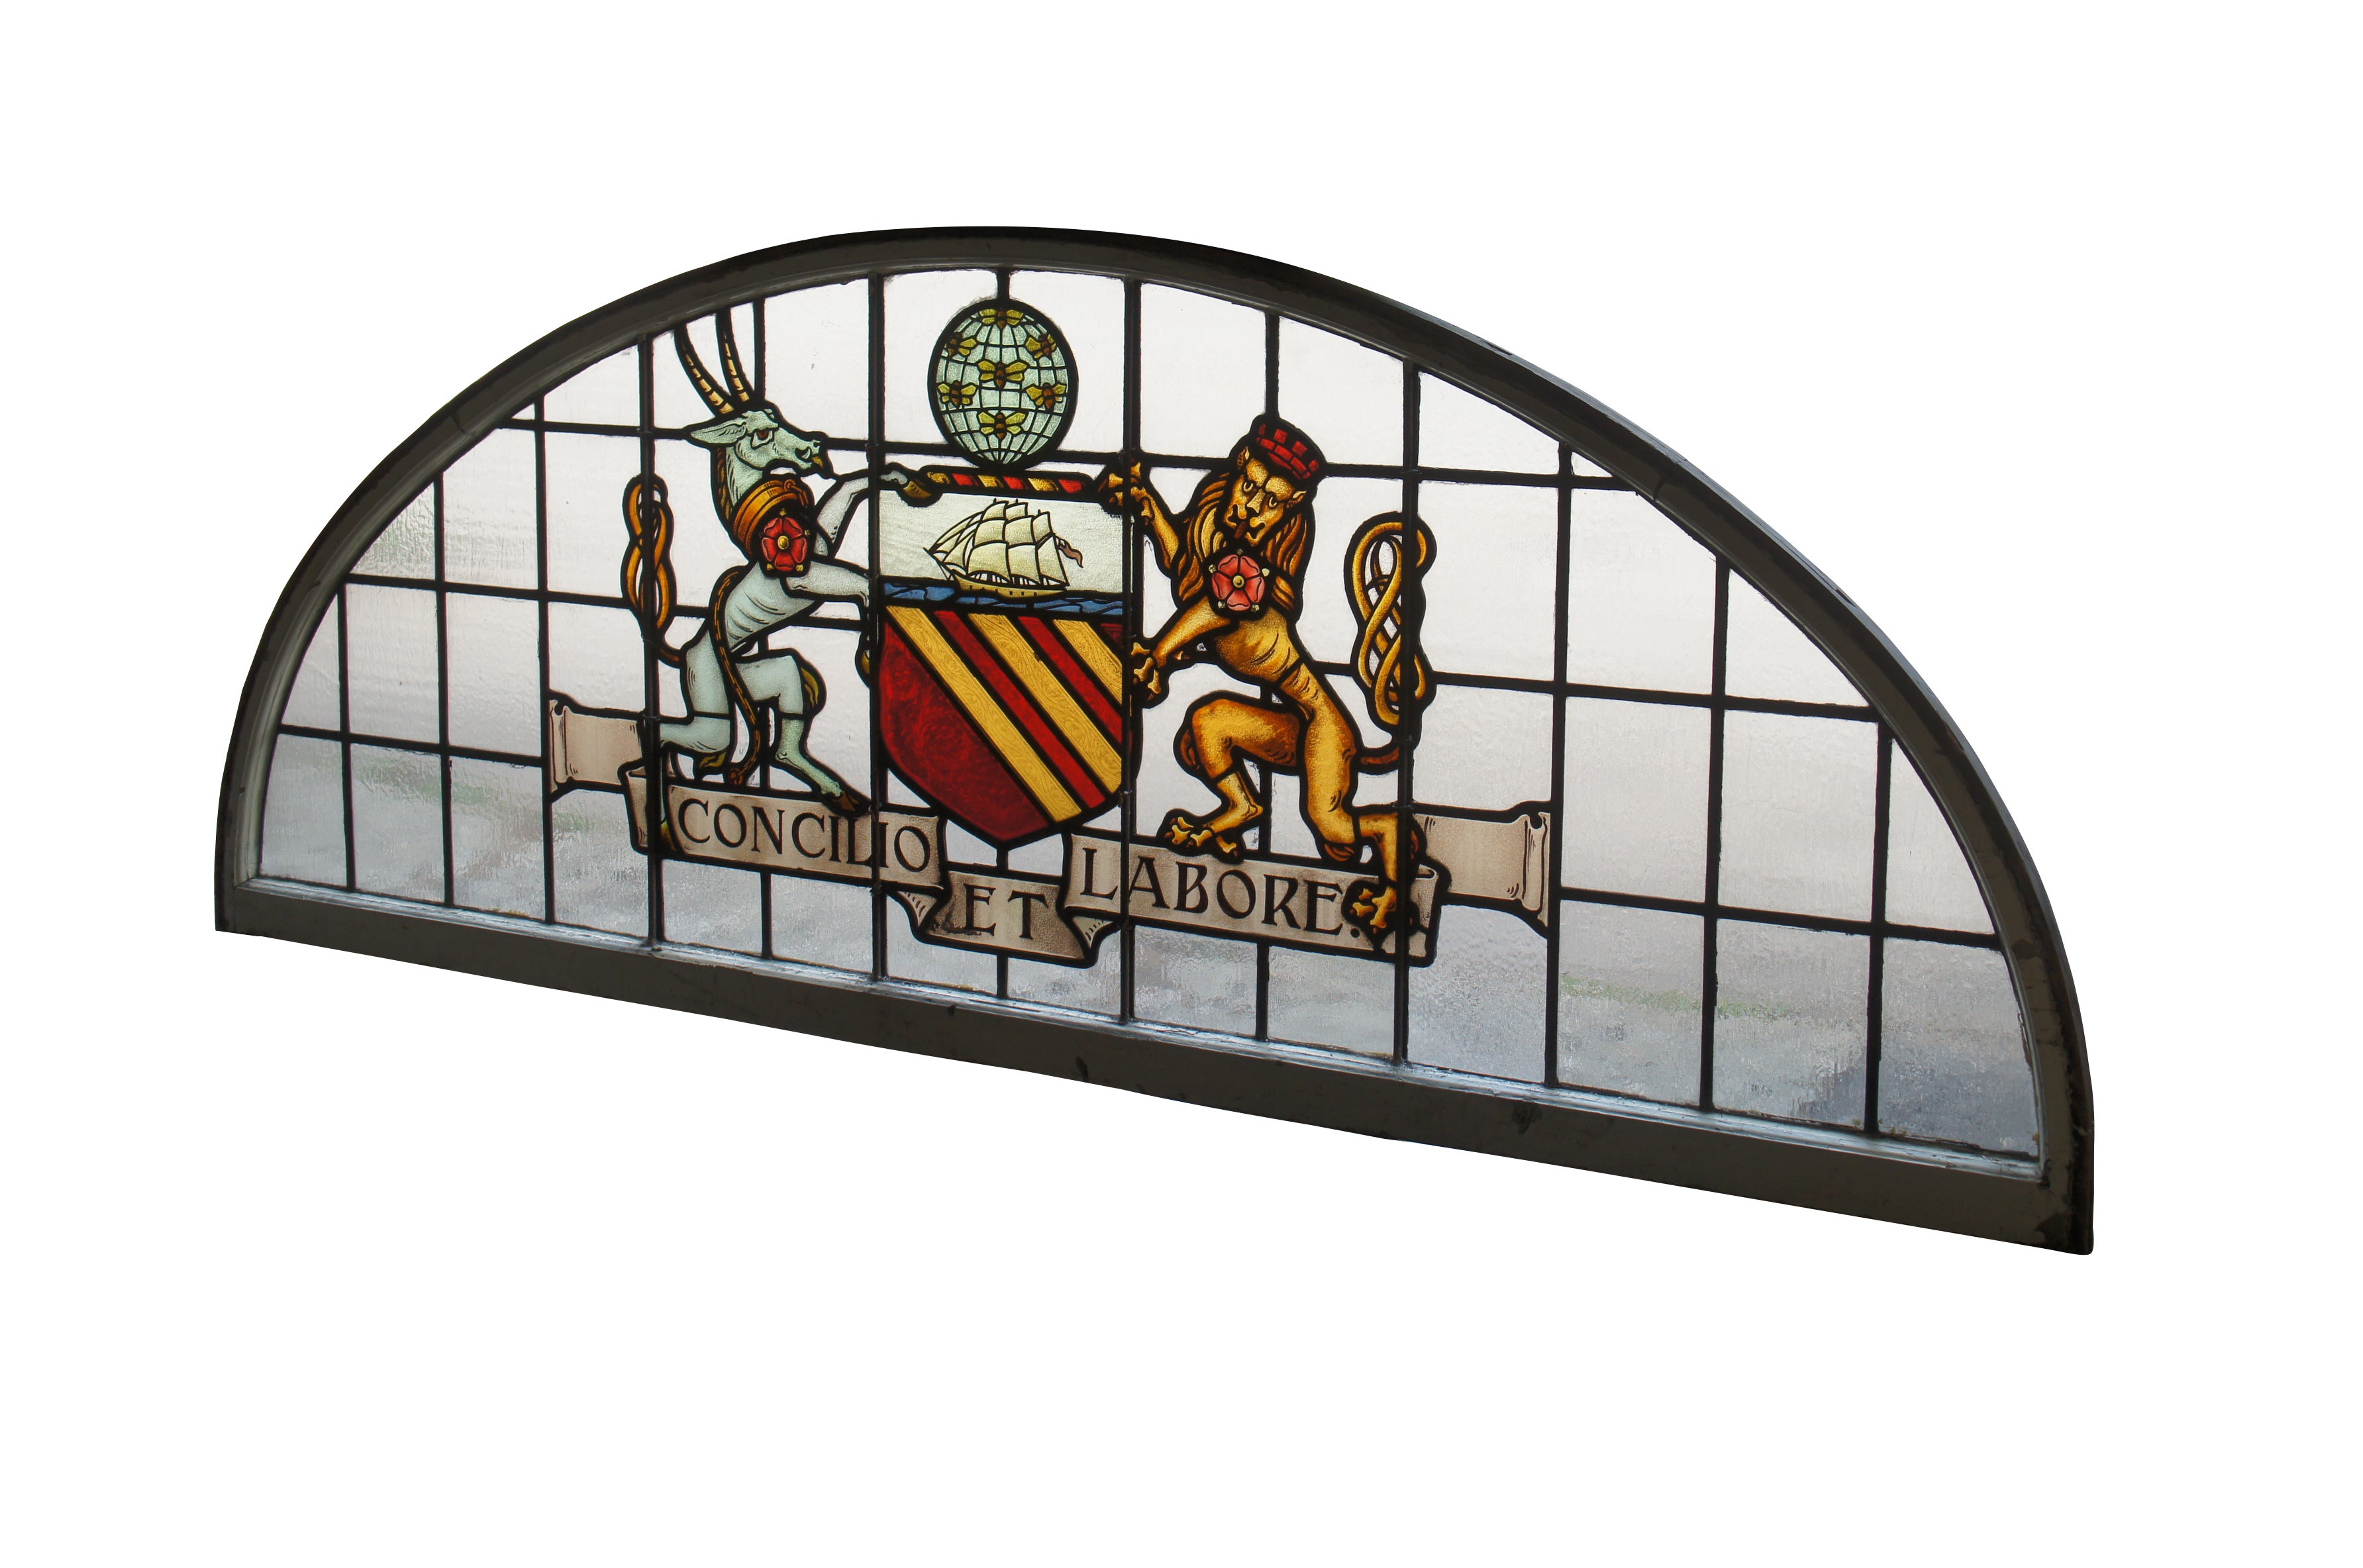 Une fantastique et très grande paire de panneaux de fenêtre palladienne en verre au plomb, extrêmement rares, vers la fin du 19e siècle.  Il arbore les armoiries de Manchester England, intitulées à juste titre 